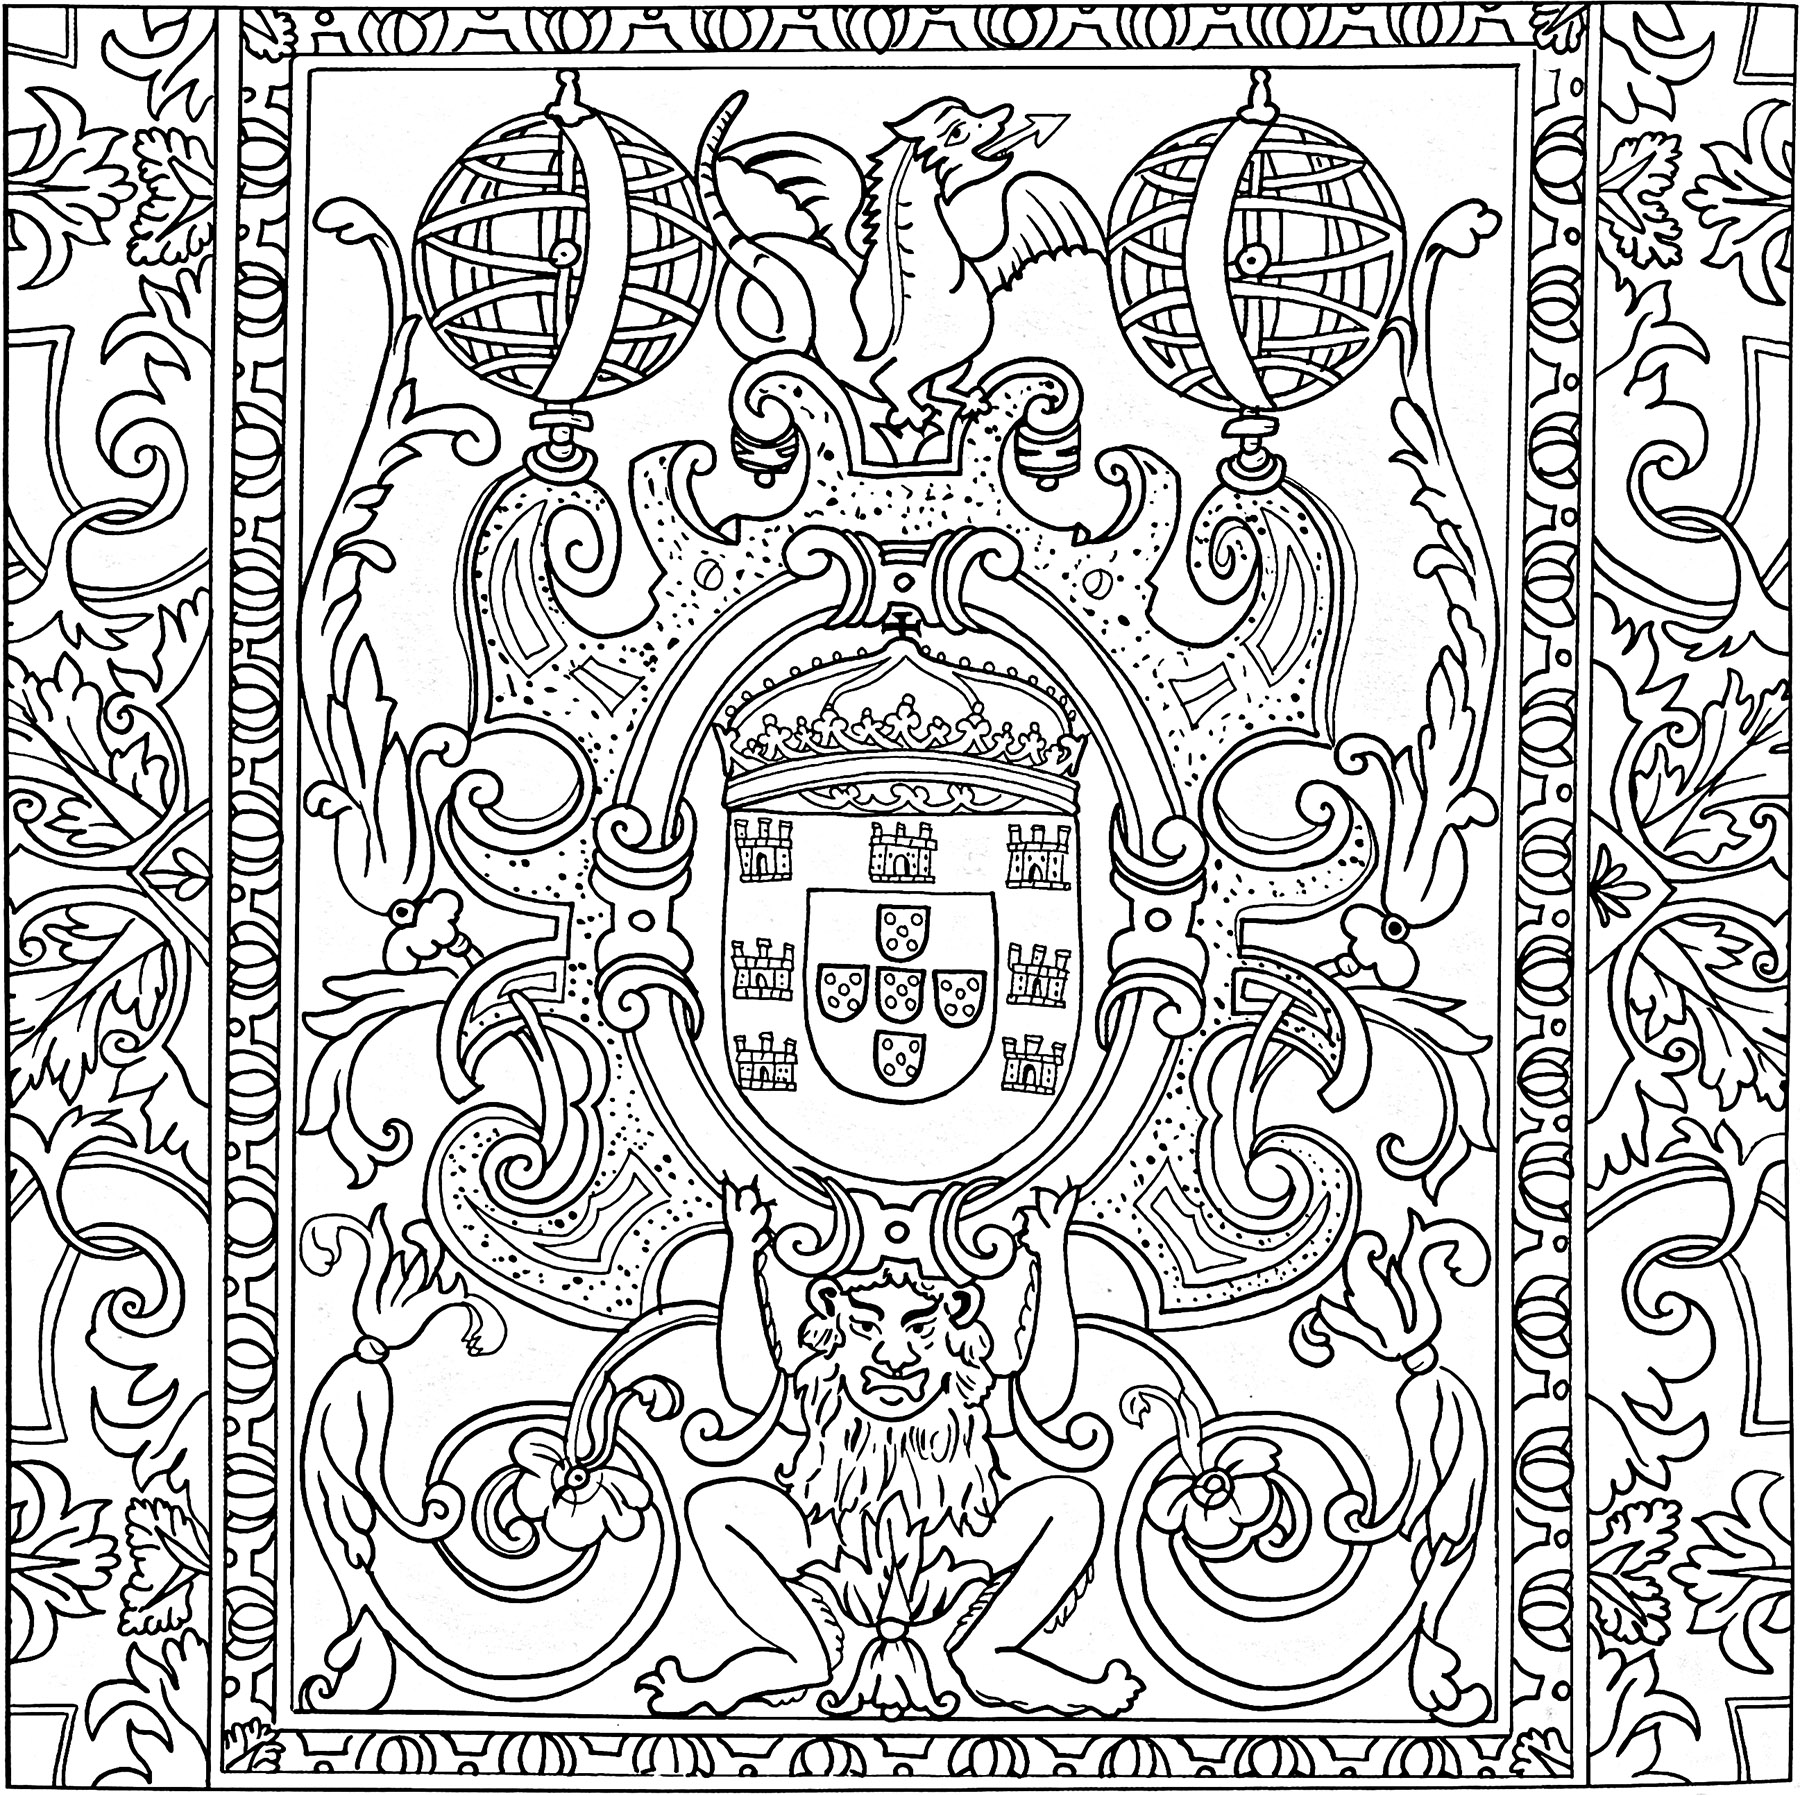 Azulejo del siglo XVII (Sintra, Portugal). Este colorido se creó a partir de un azulejo del Palacio Nacional de la Pena, en Sintra (Portugal). Data del siglo XVII.